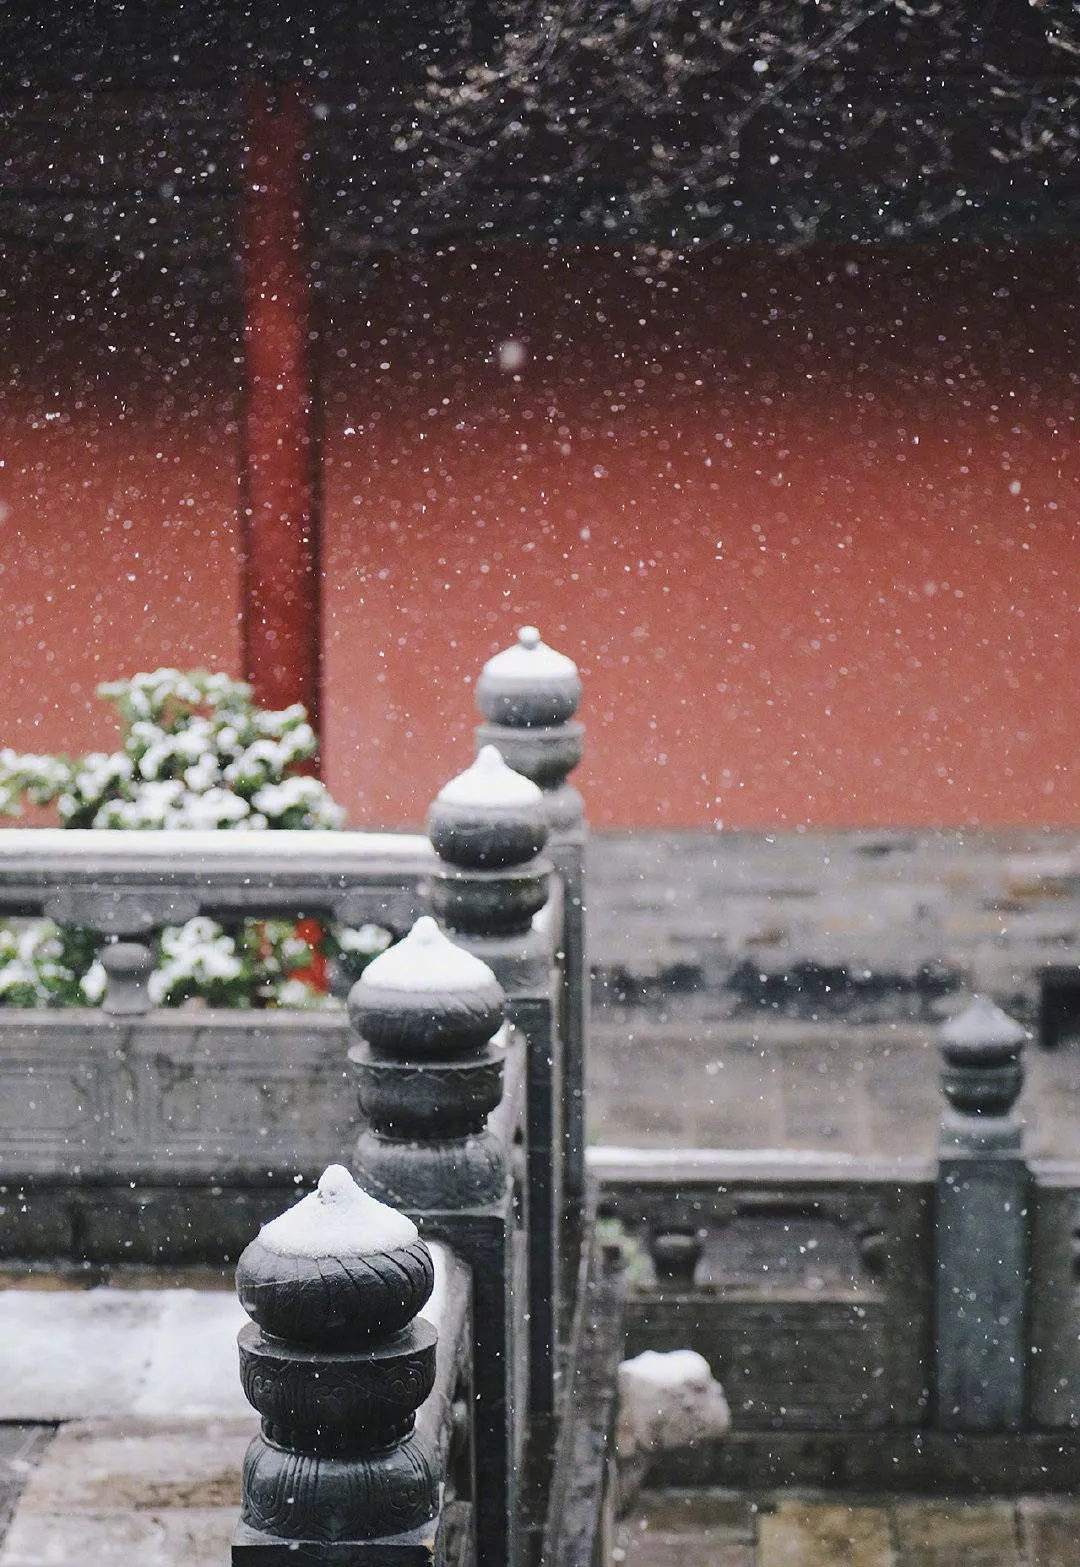 I heard that it is snowing in Nanjing